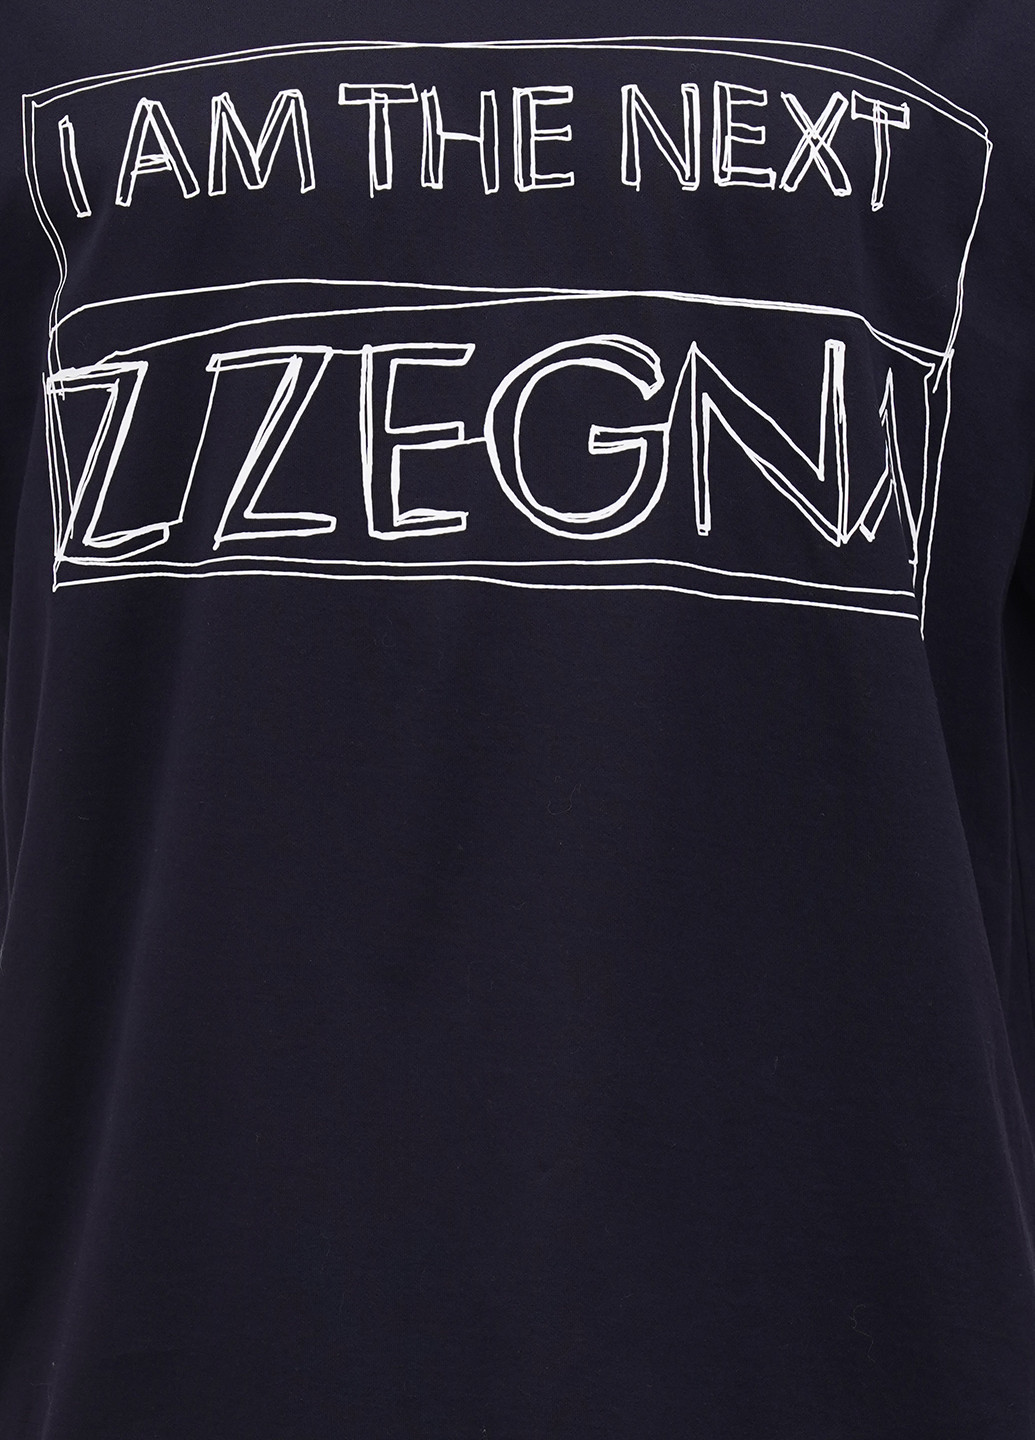 Темно-синя футболка Z Zegna